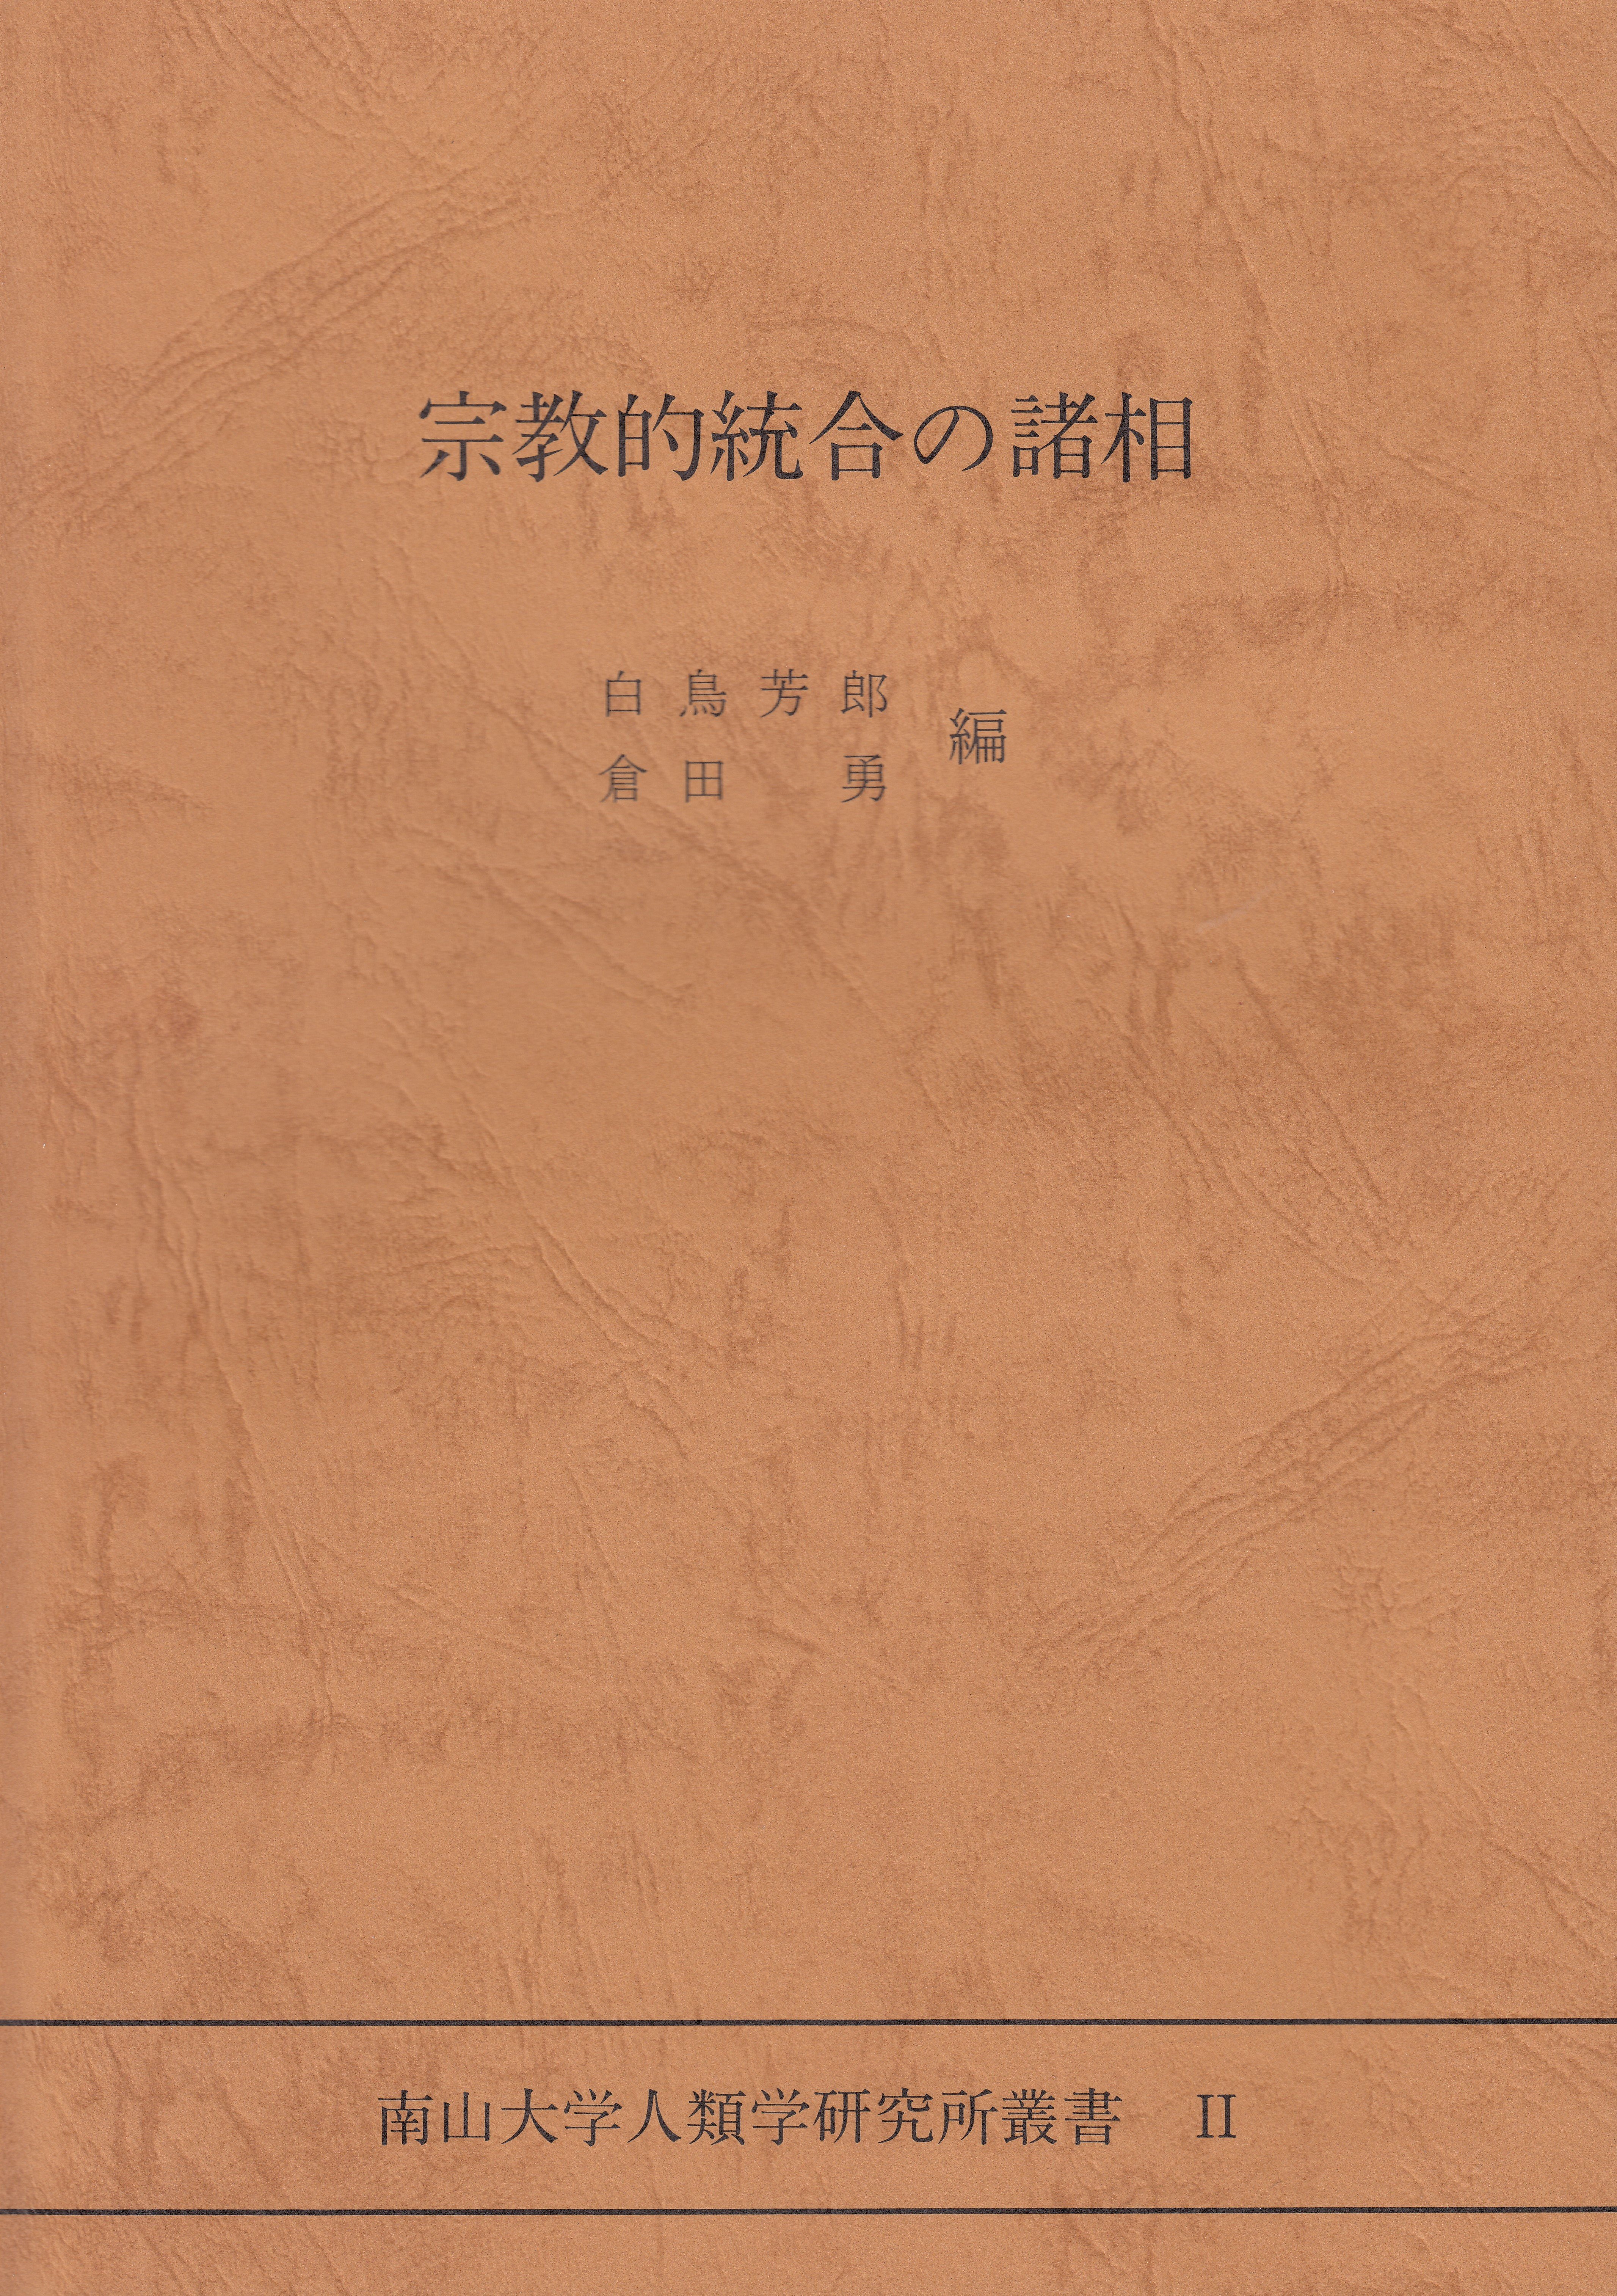 2.『宗教的統合の諸相』白鳥 芳郎・倉田 勇編（1985）￥2,500